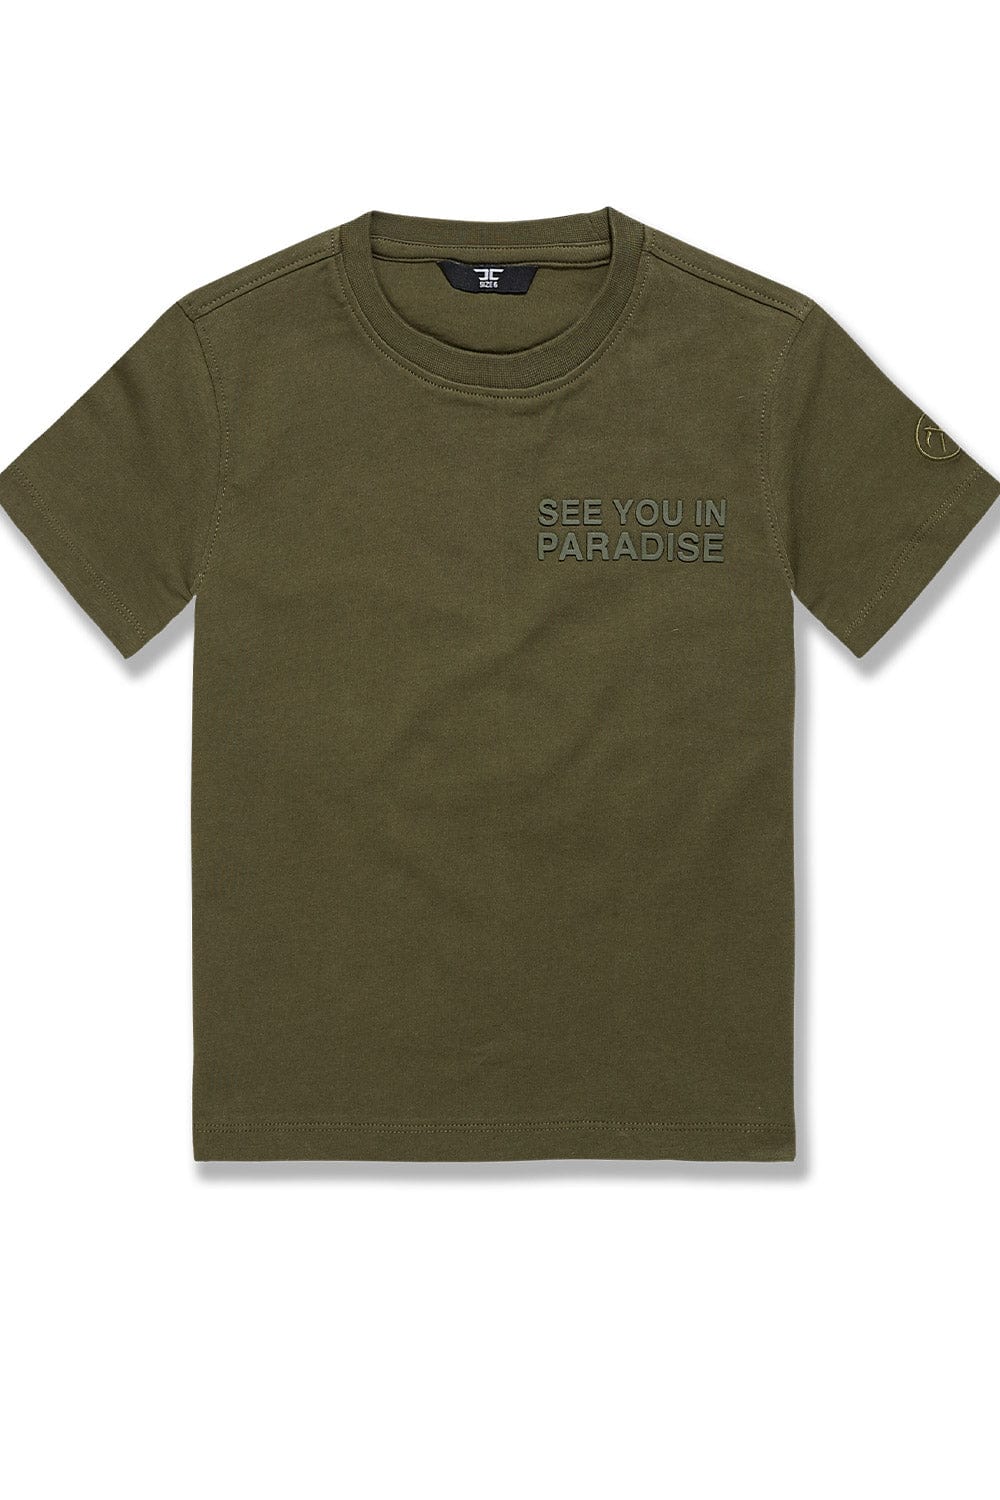 JC Kids Kids Paradise Tonal T-Shirt (Olive) 2 / Olive